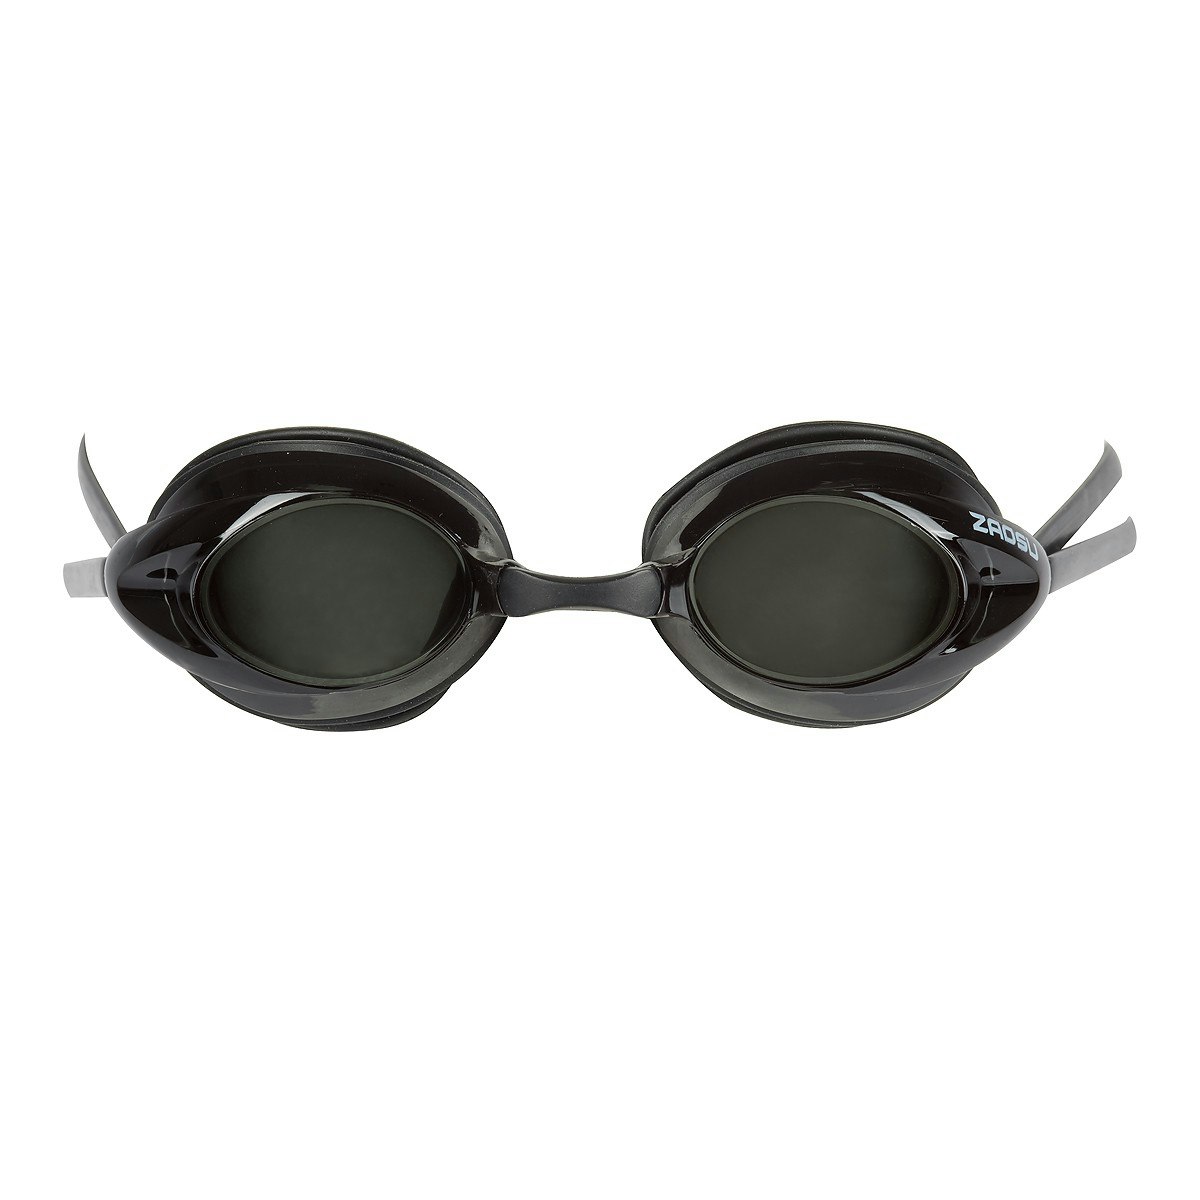 ZAOSU Optisk simglasögon med styrka för att korrigera närsynthet. Färg: Svart